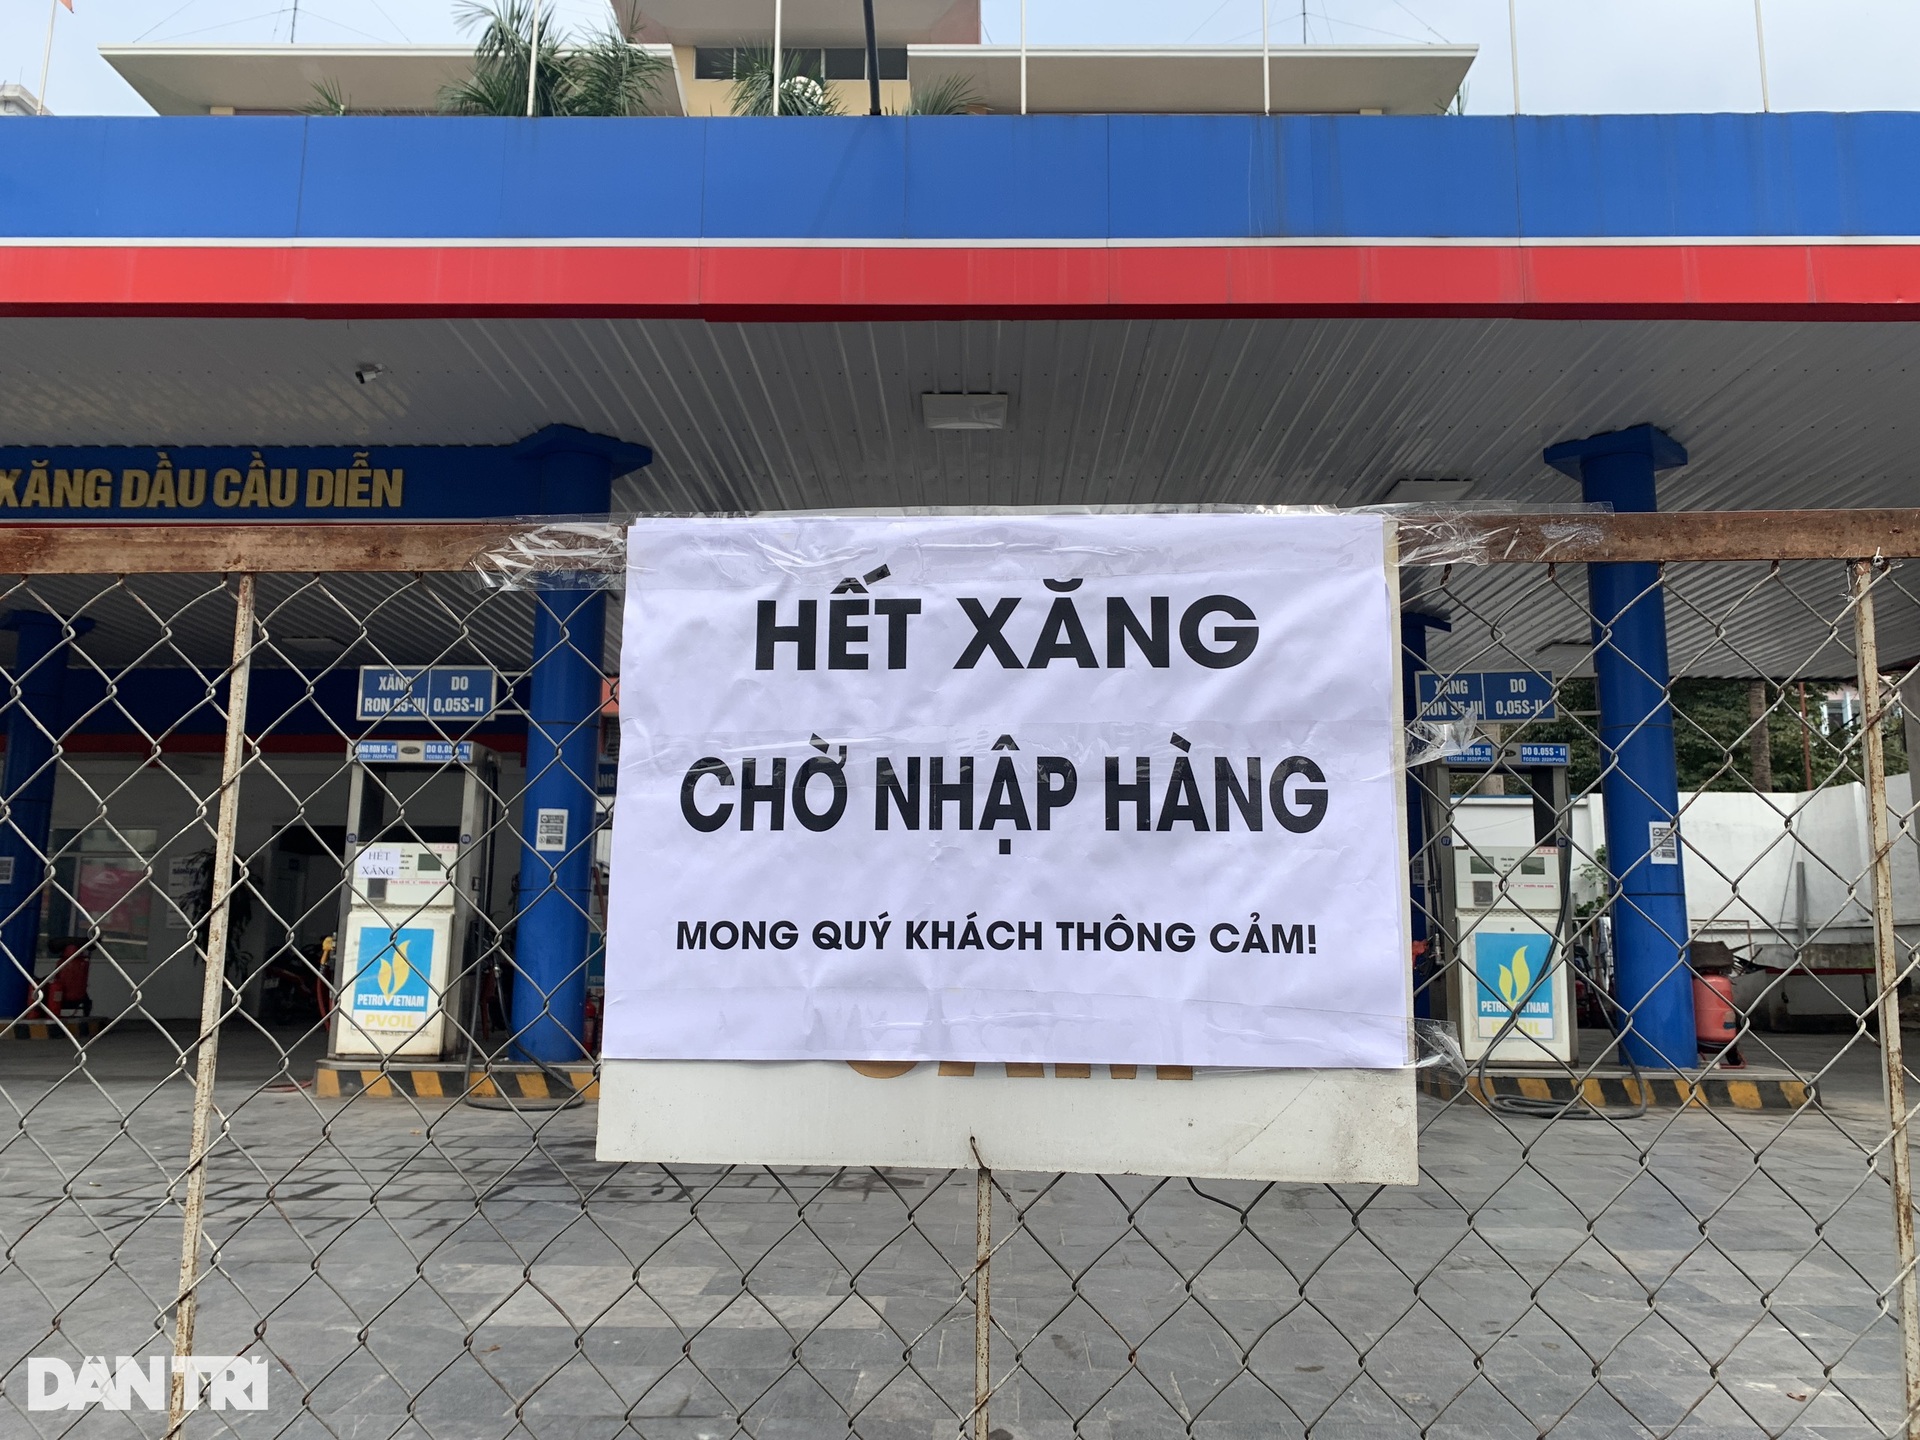 Mặc kệ giá xăng tăng, nhiều cây xăng ở Hà Nội vẫn đóng cửa im lìm - 4